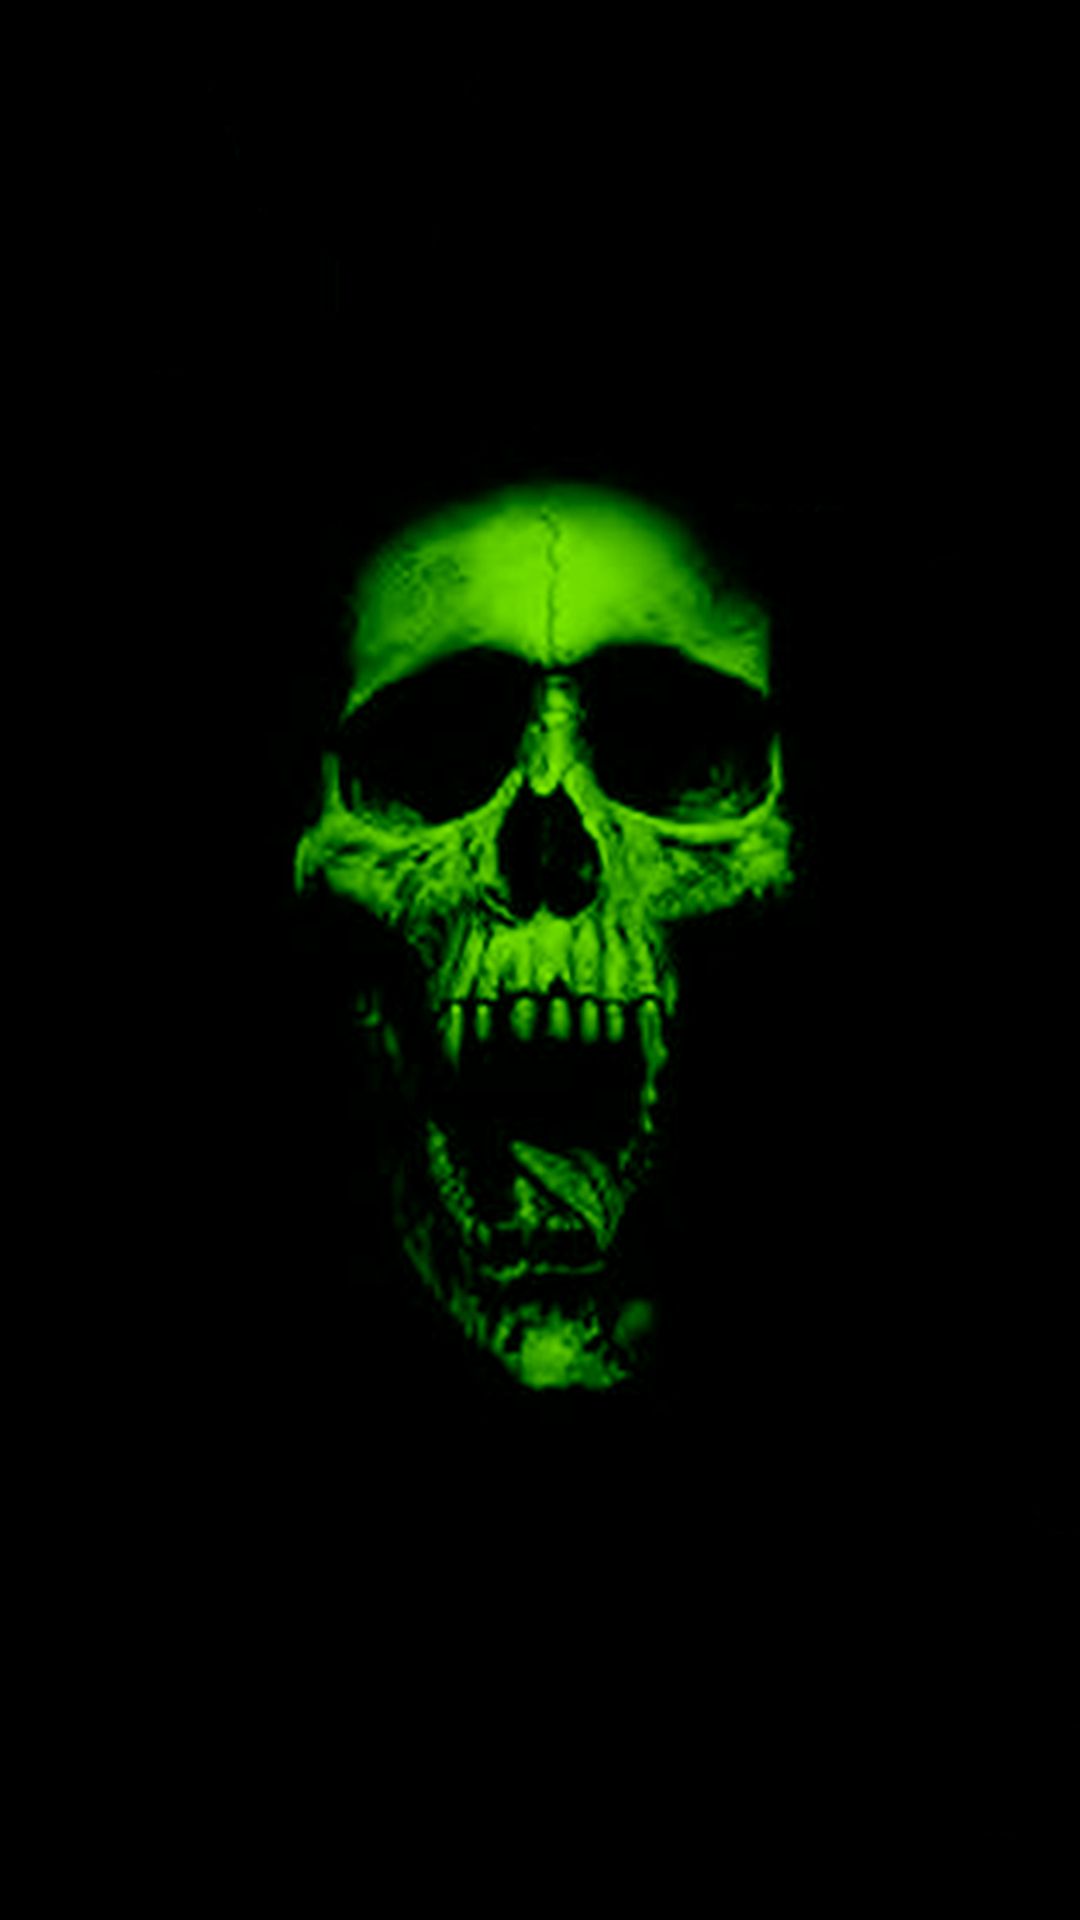 Evil Skull Black Background - 1080x1920 Wallpaper 